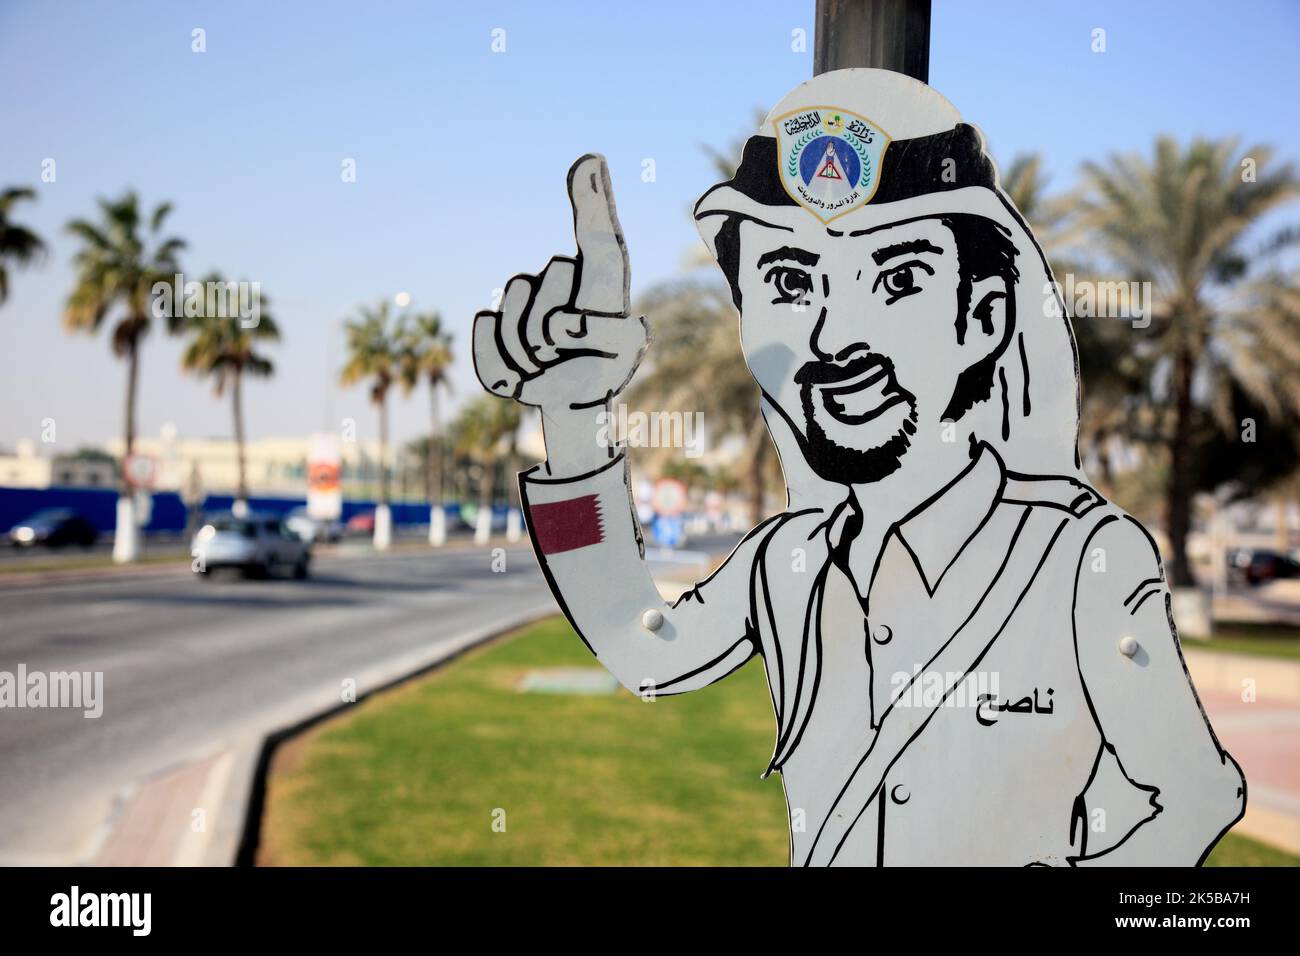 Verkehrszeichen, mit einem Polizisten mit erhobenem Zeigefinger, als Symbol, Doha, Qatar, Katar Banque D'Images